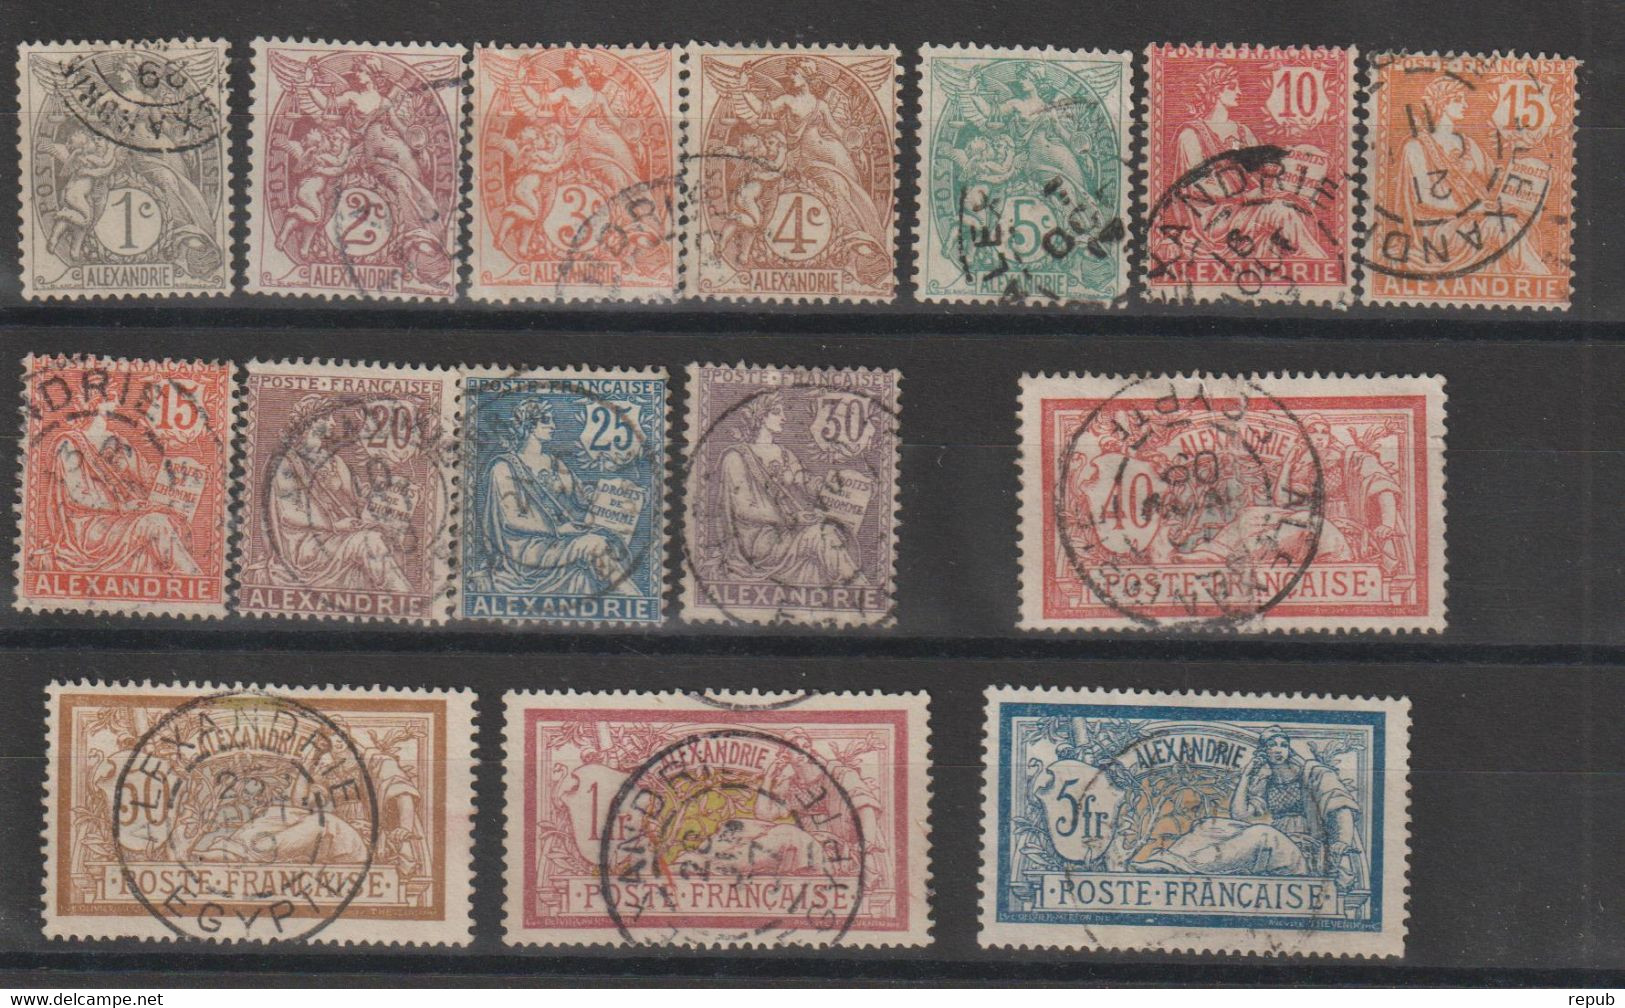 Alexandrie 1902-1903 Série Courante 19-33 Sauf 32 + 25a, 15 Val Oblit Used - Oblitérés